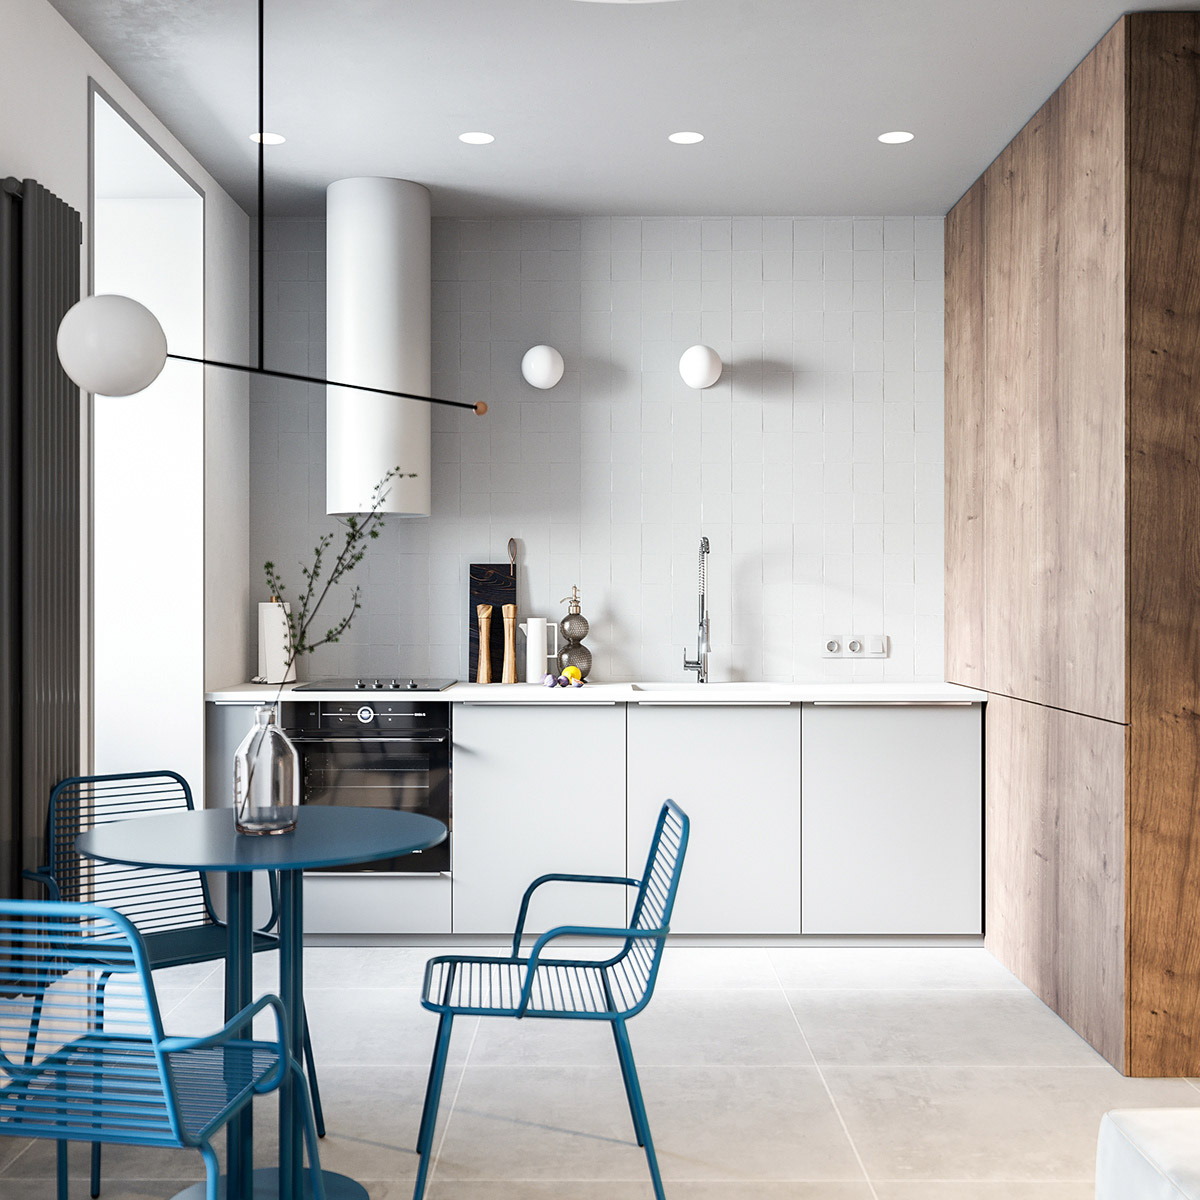 one-wall-kitchen-1.jpg